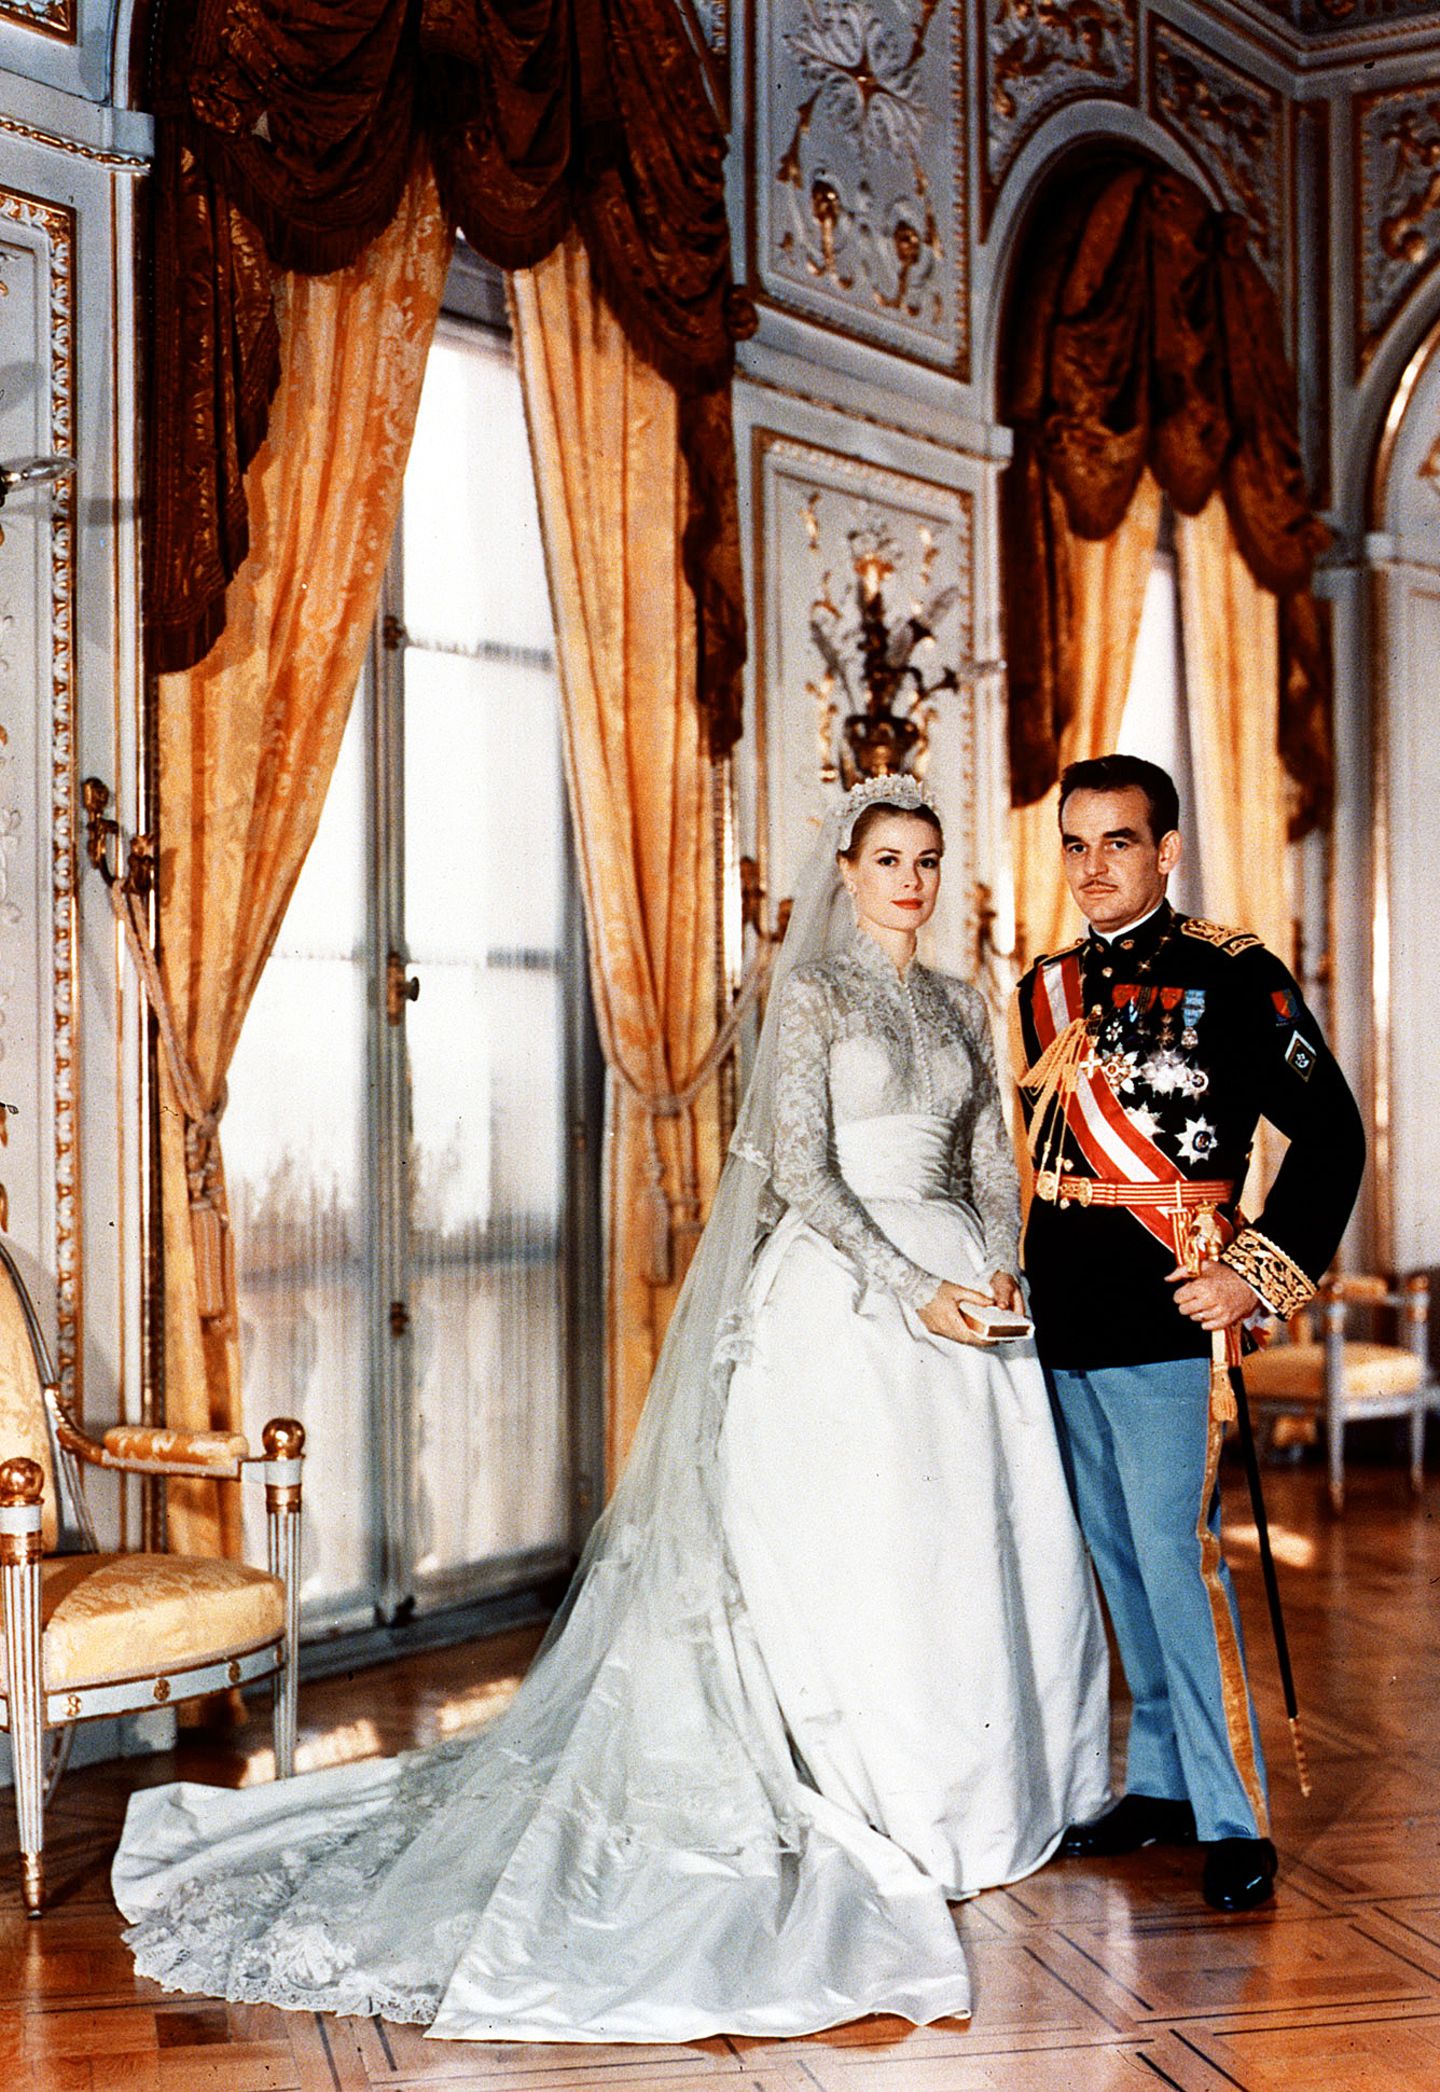 Archivbilder der Monaco-Hochzeit 1956